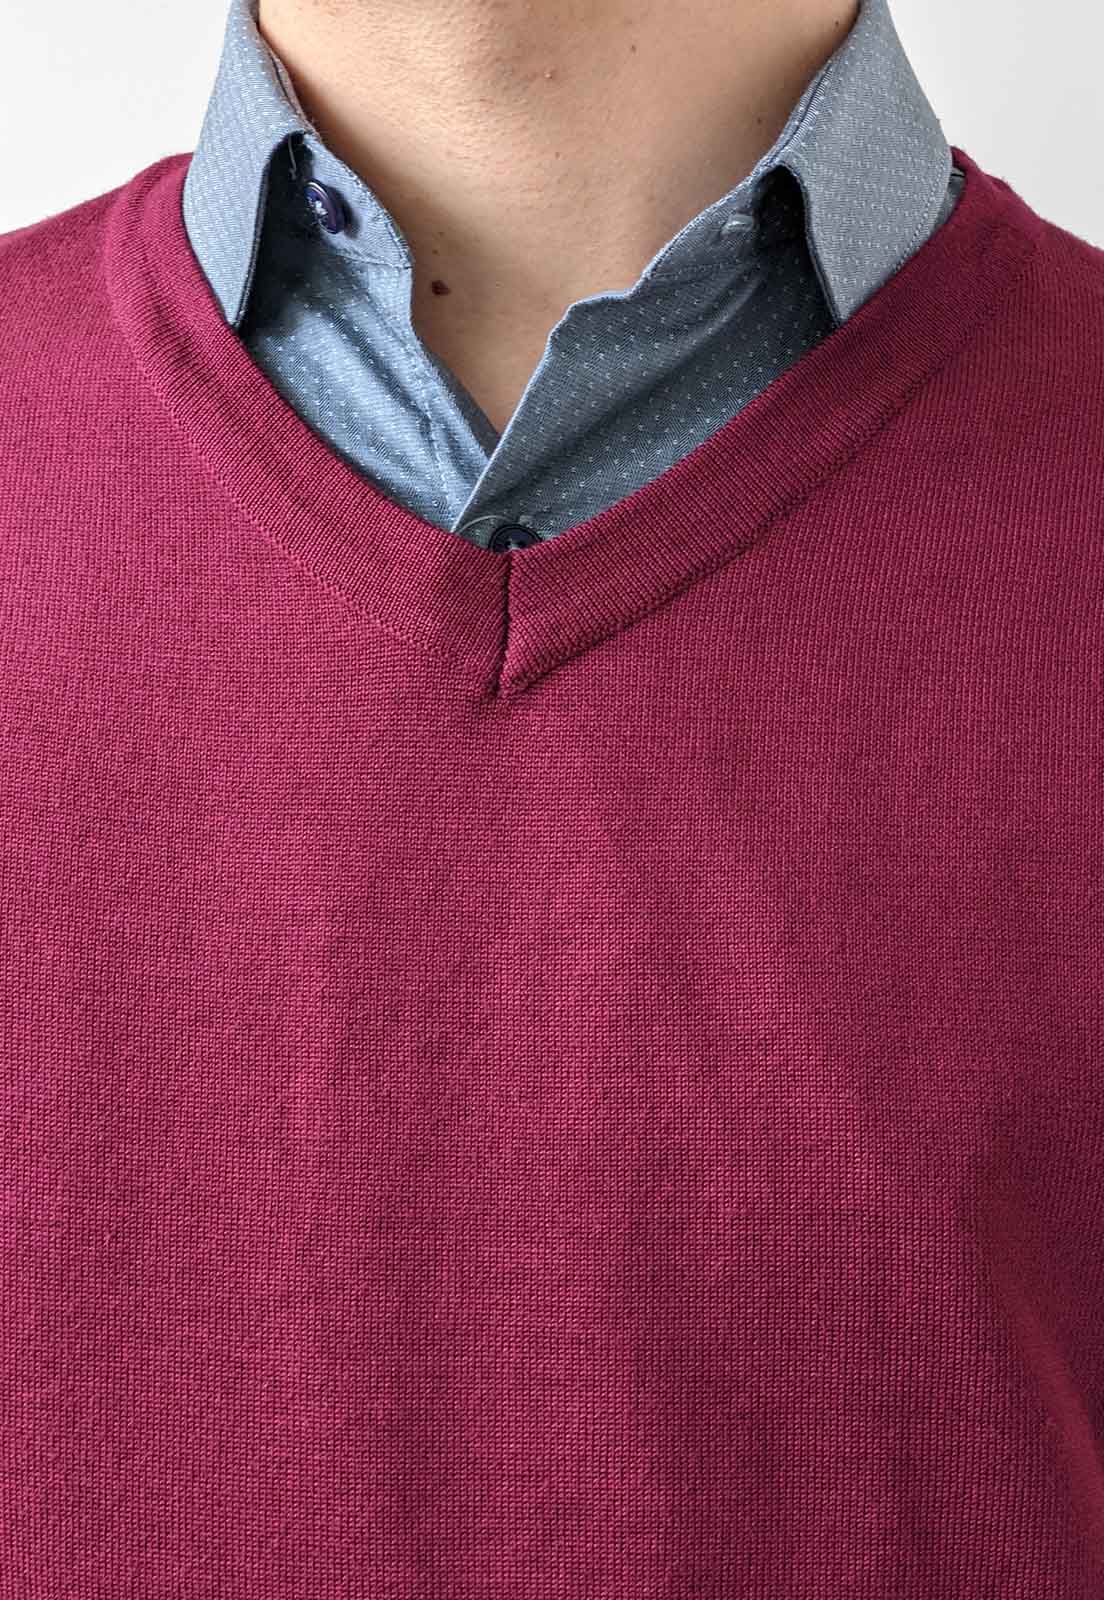 Suéter Tricot Enzo Básico Vermelho